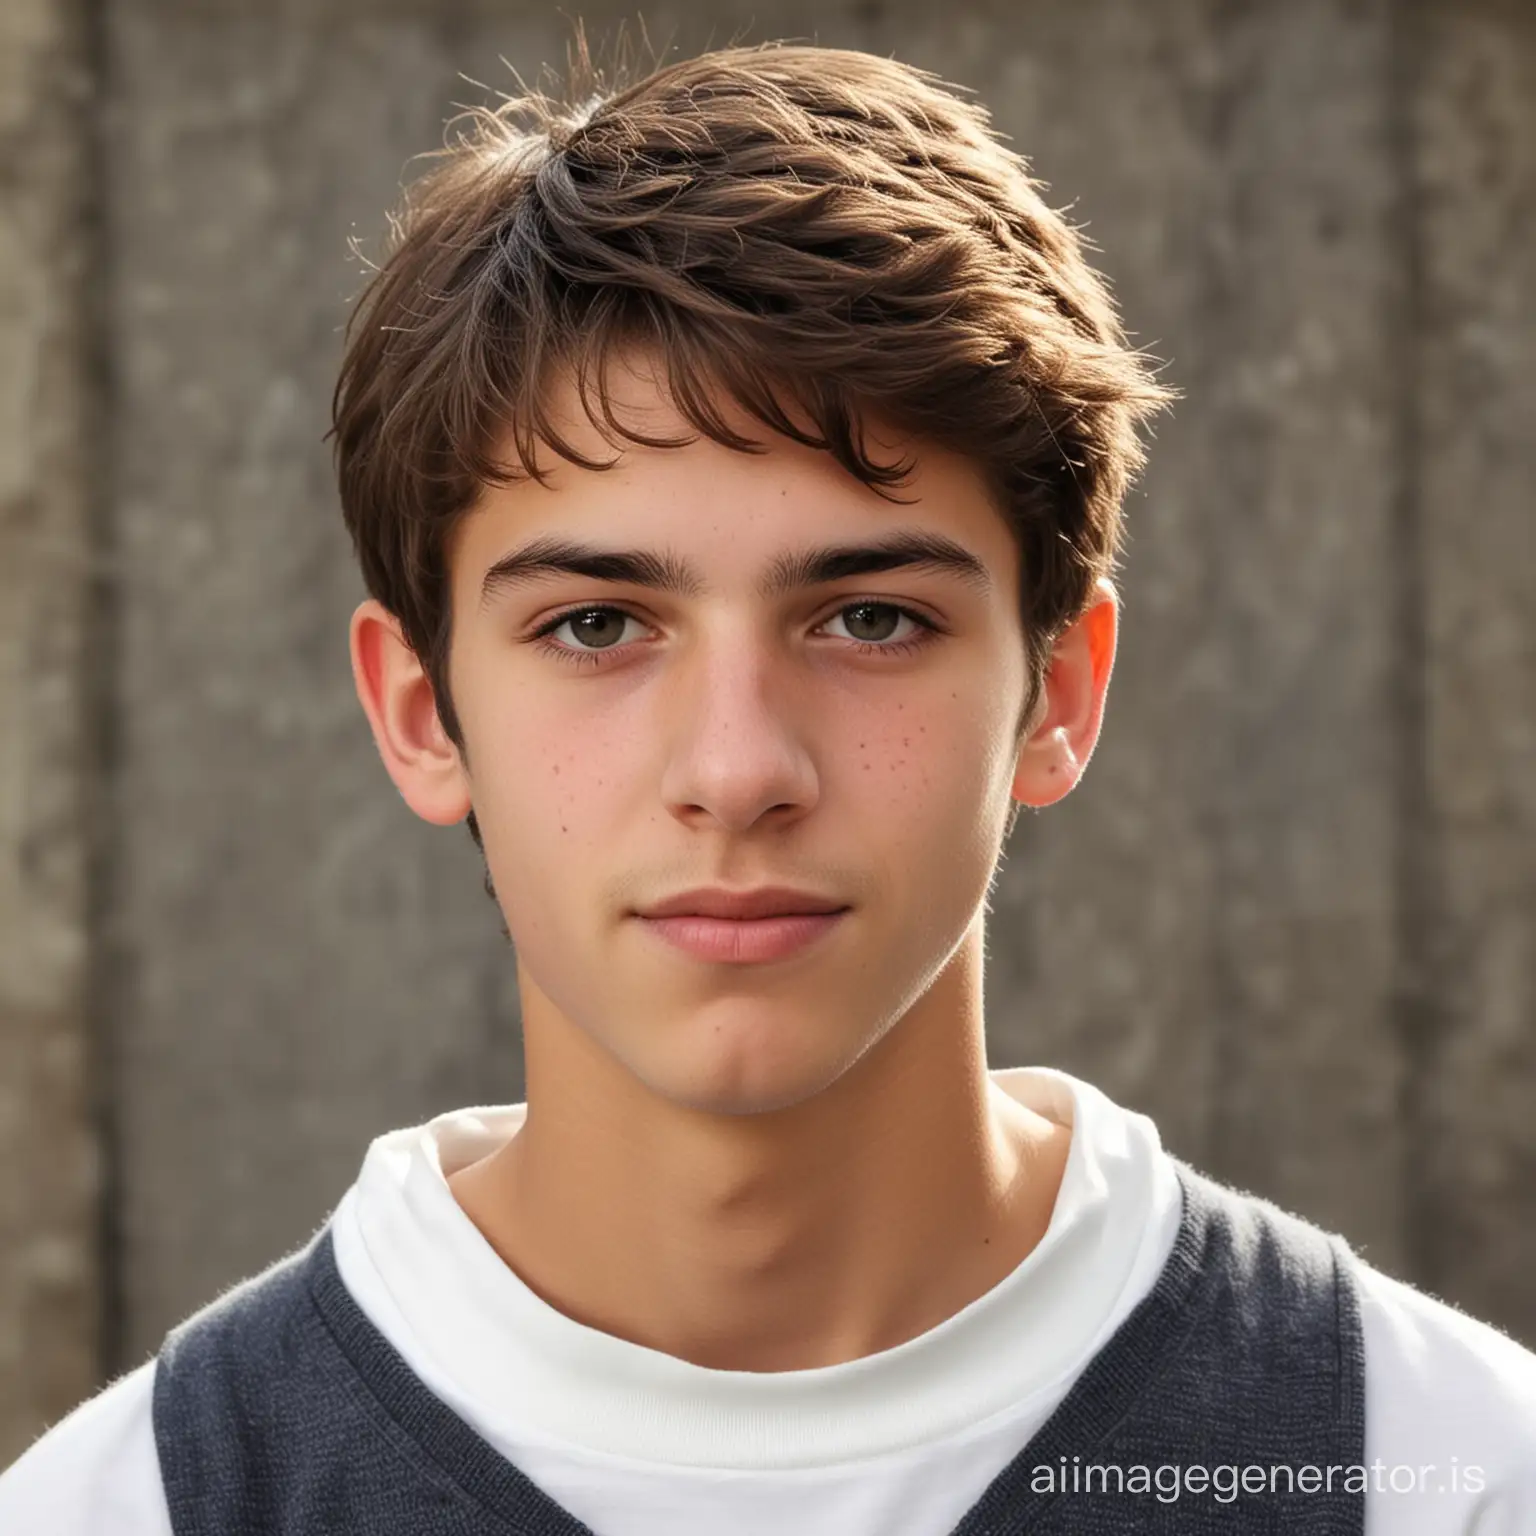 French teenage boy